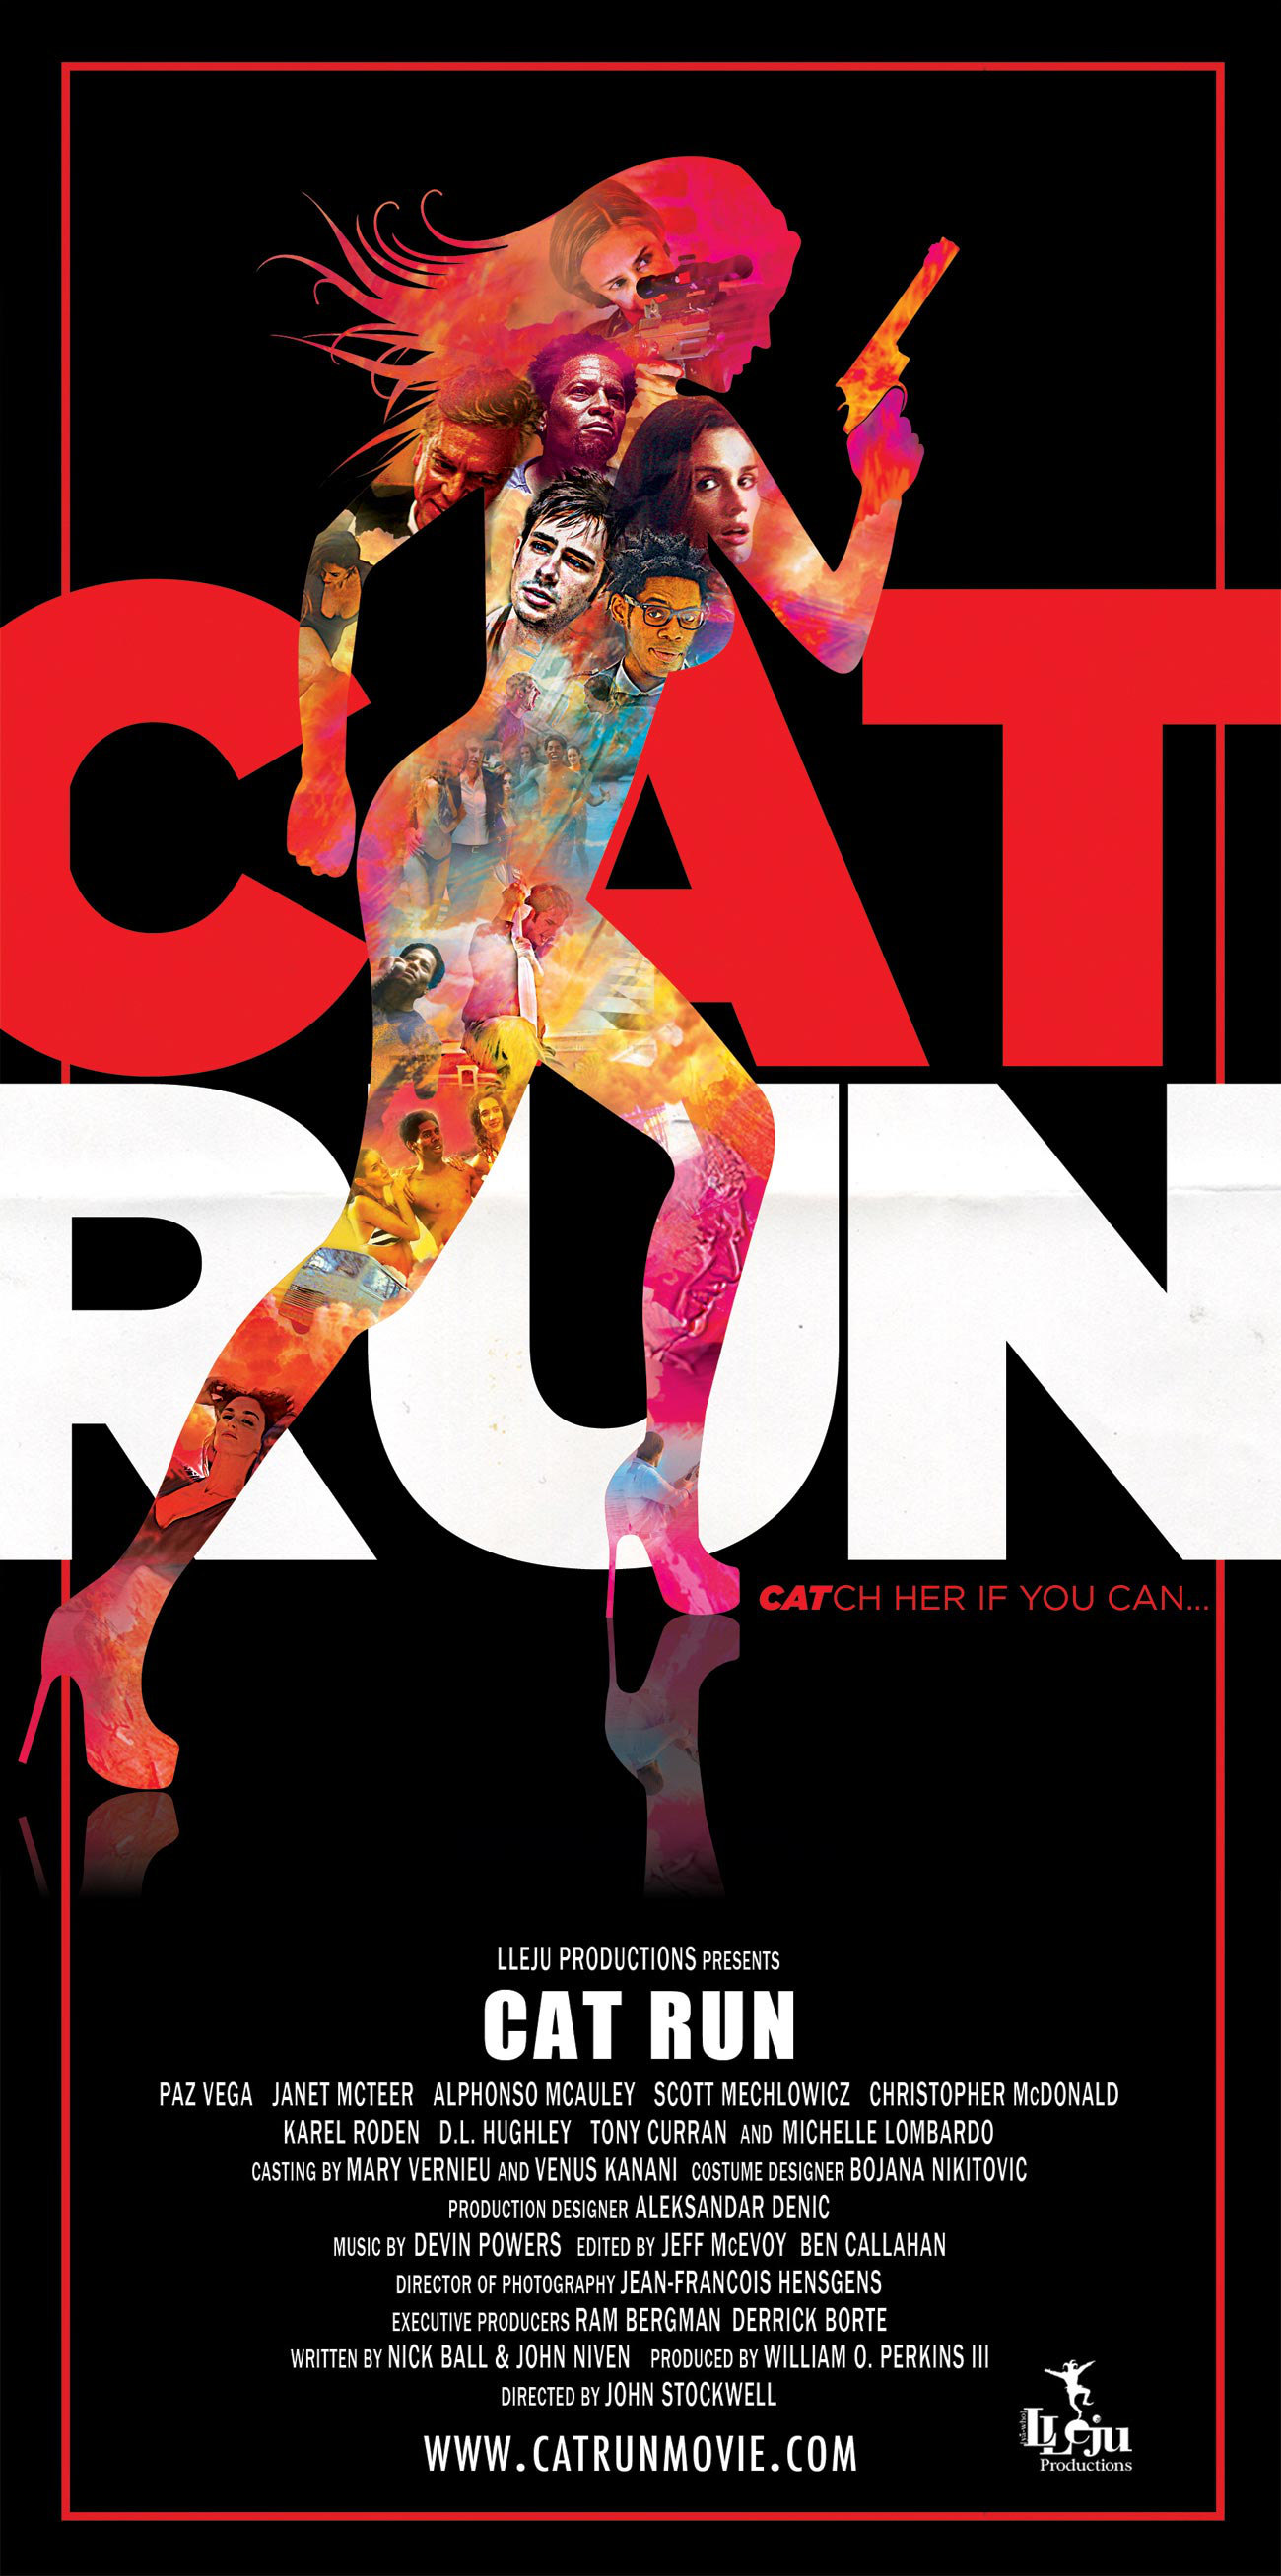 Poster of Lleju Productions' Cat Run (2011)